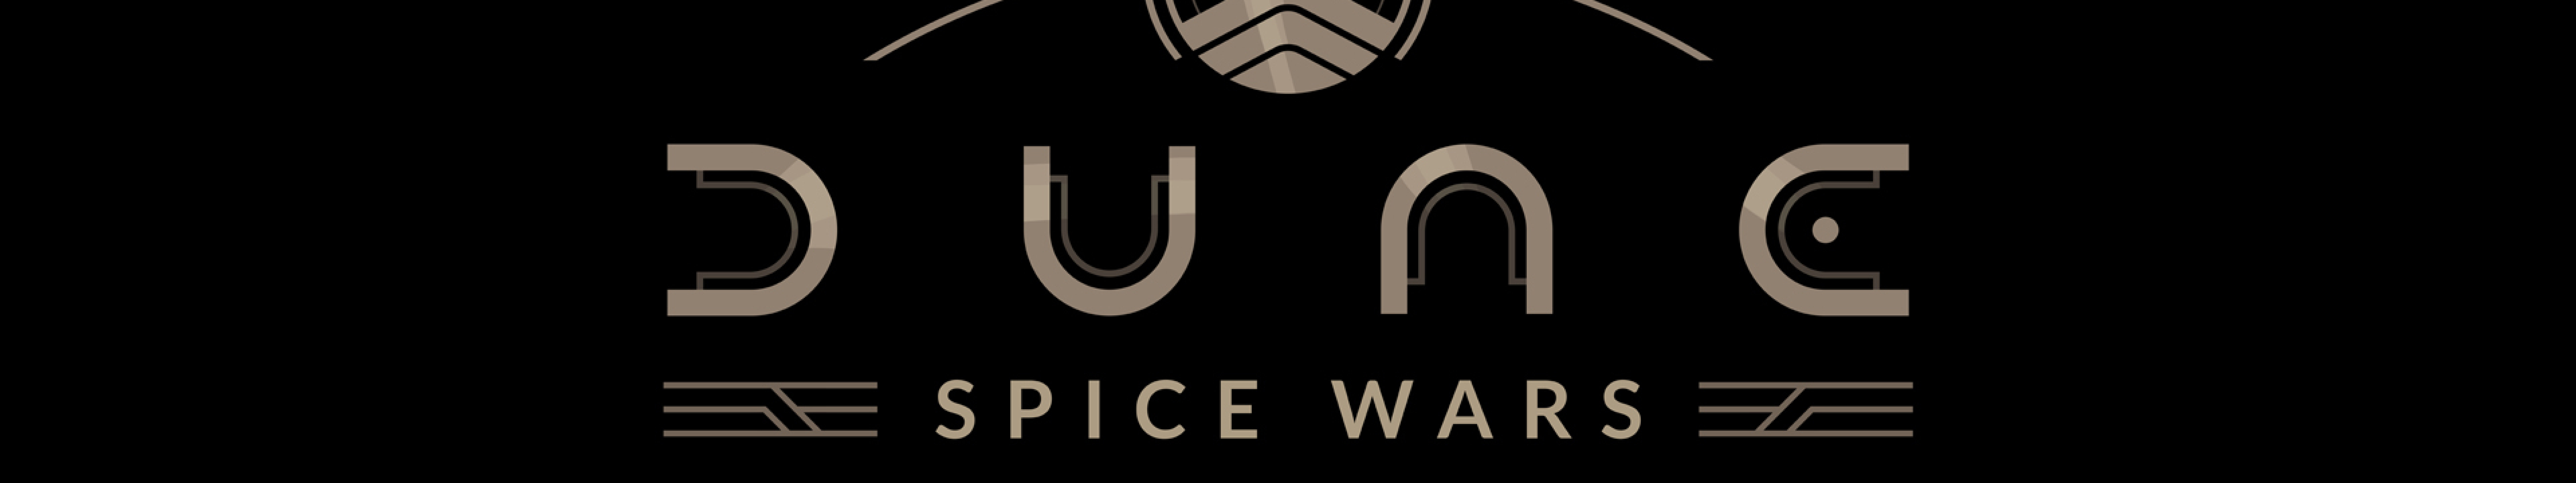 7680x1440 Resolution Dune Spice Wars Logo 7680x1440 Resolution ...